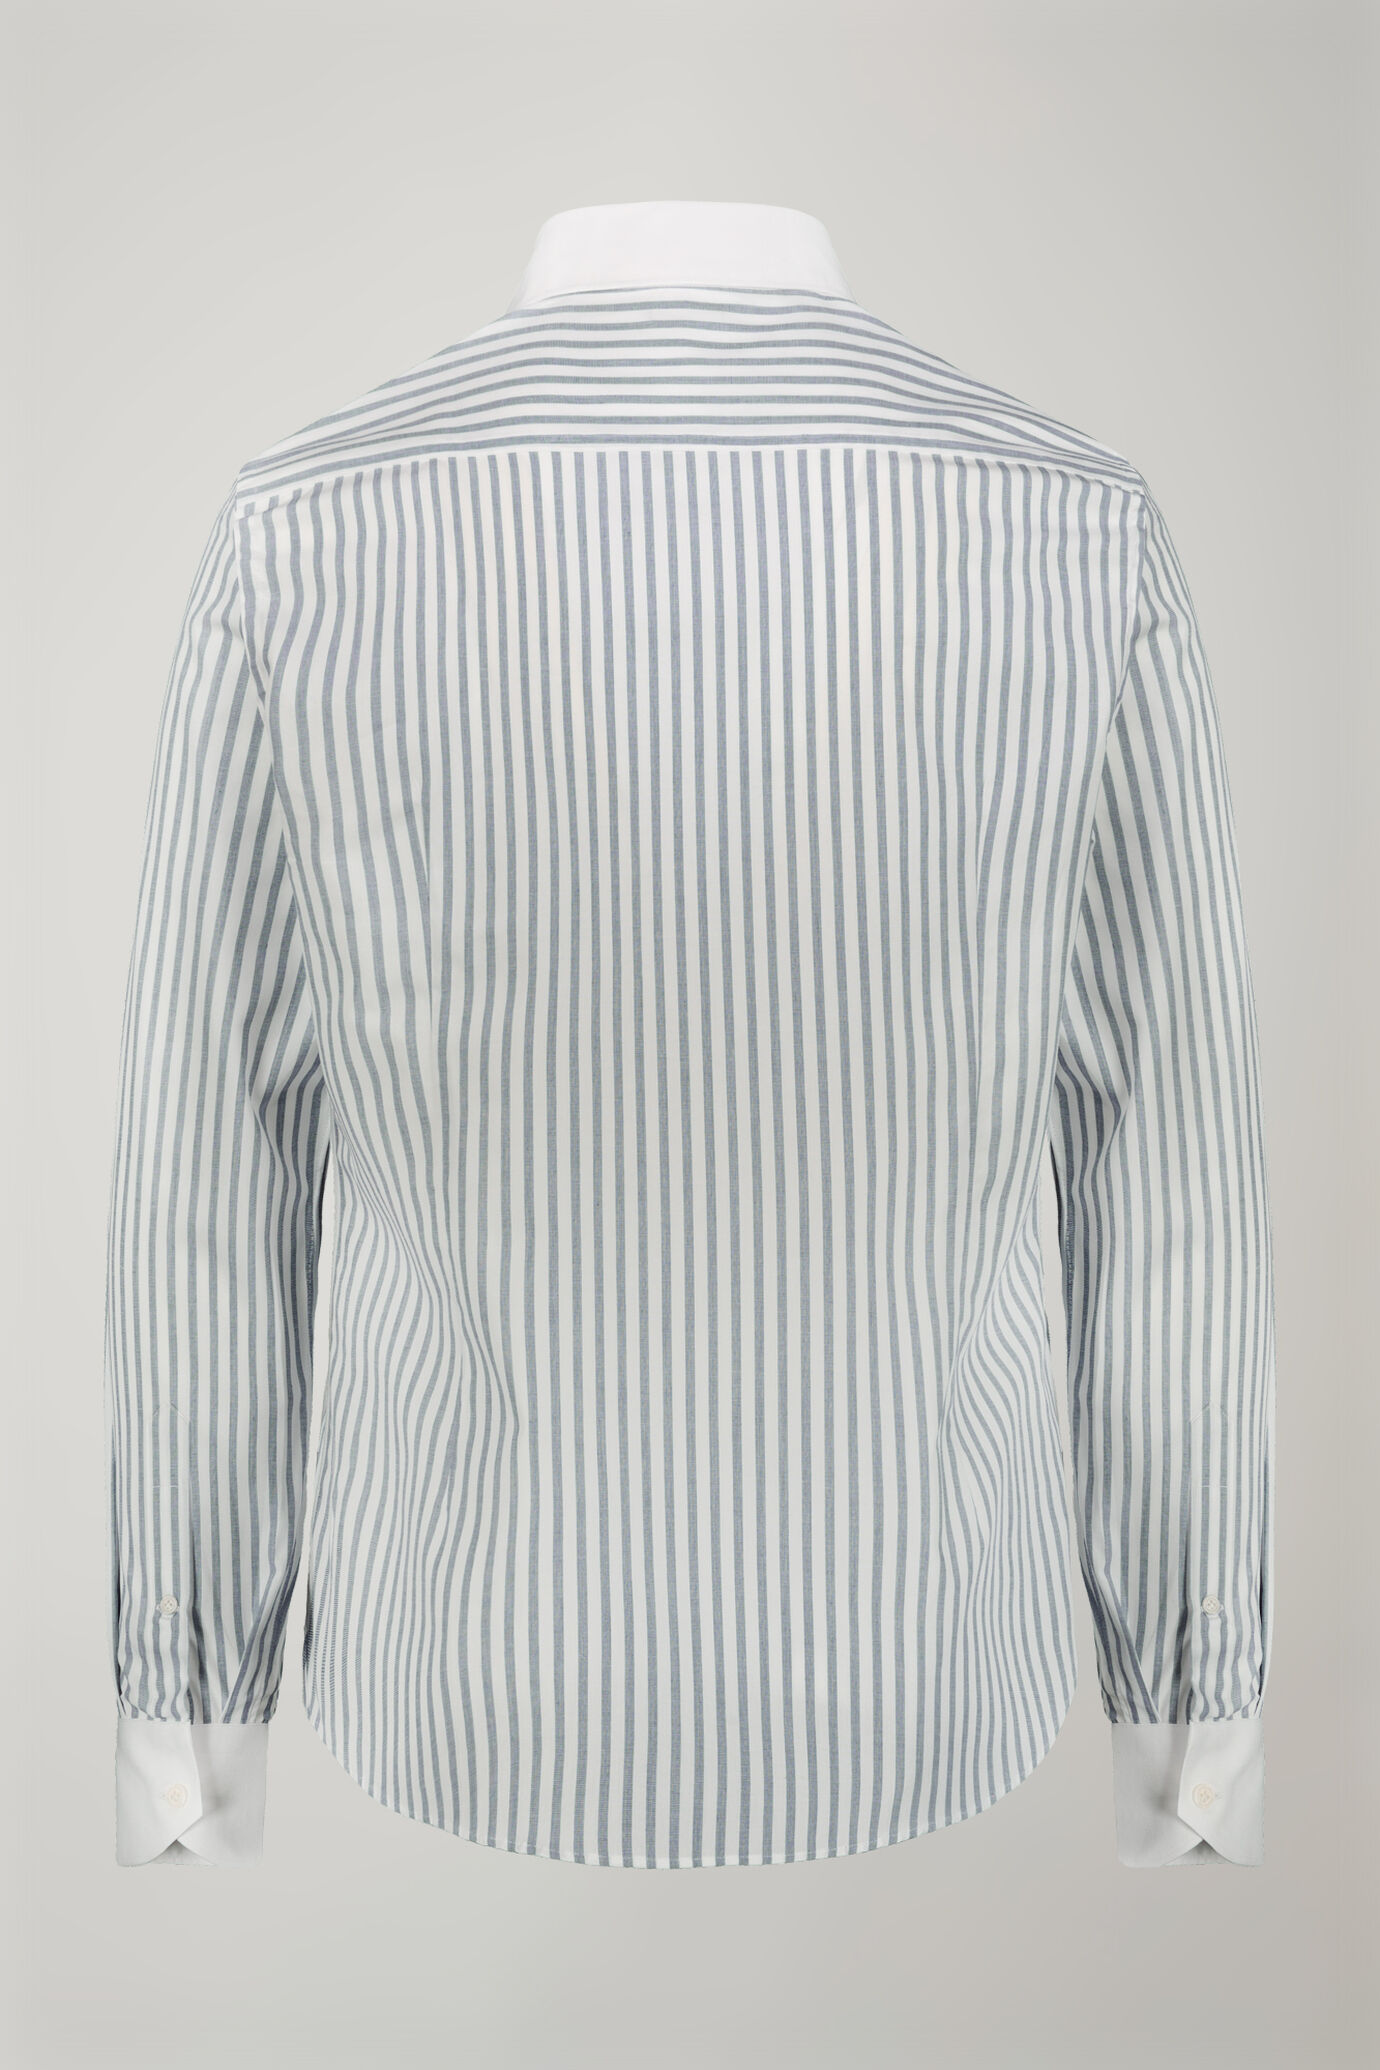 Camicia uomo collo classico 100% cotone tessuto tinto filo riga larga regular fit image number 5